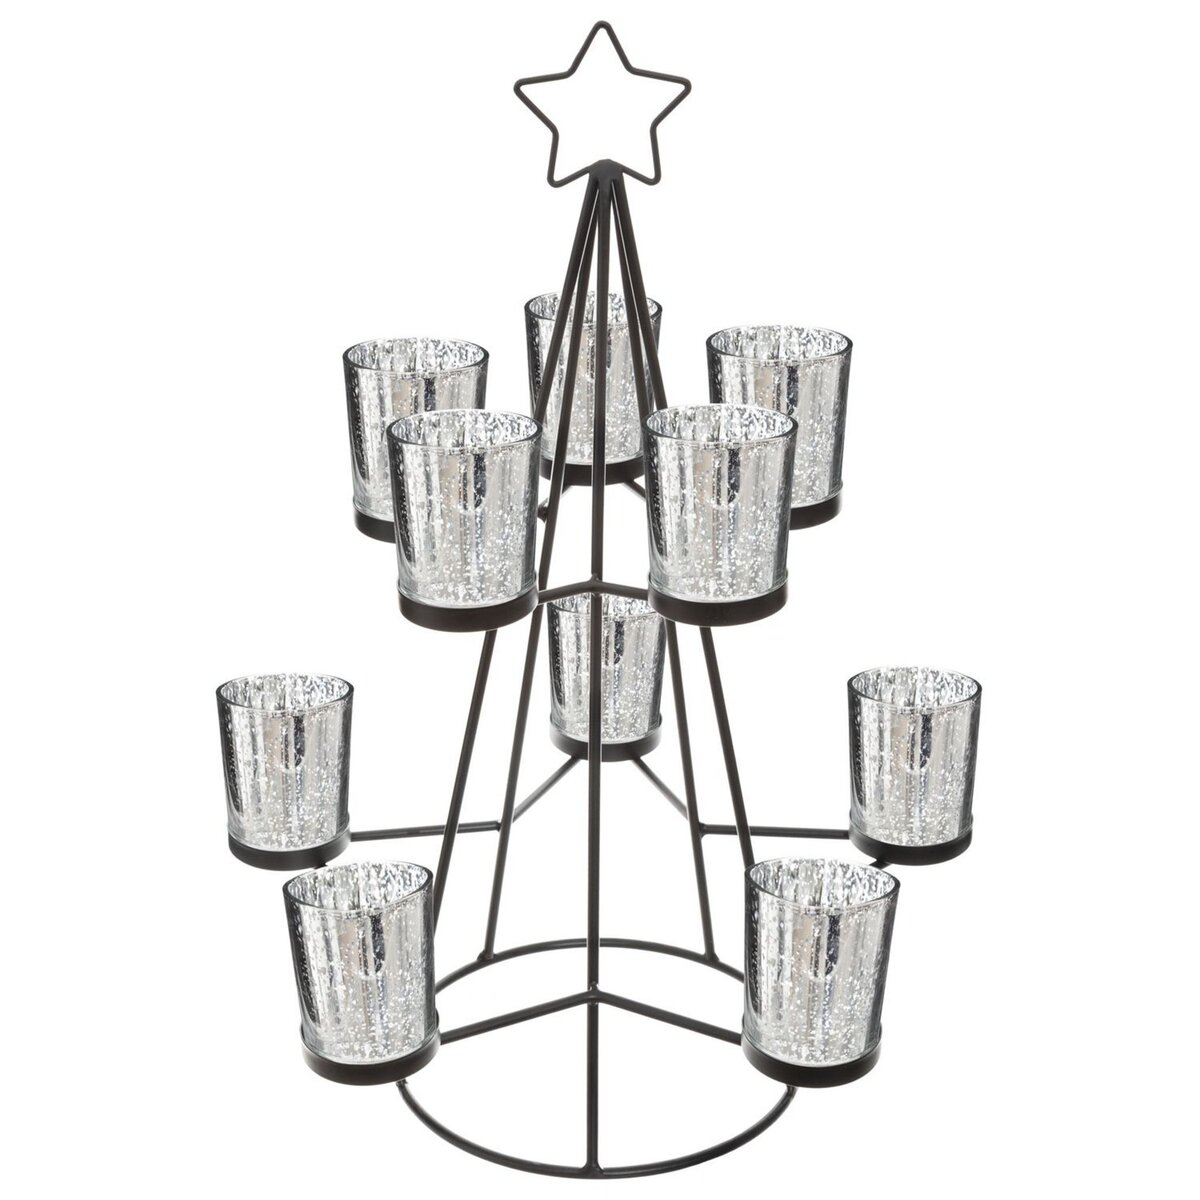  Photophore de Noël design métal Sapin - Noir